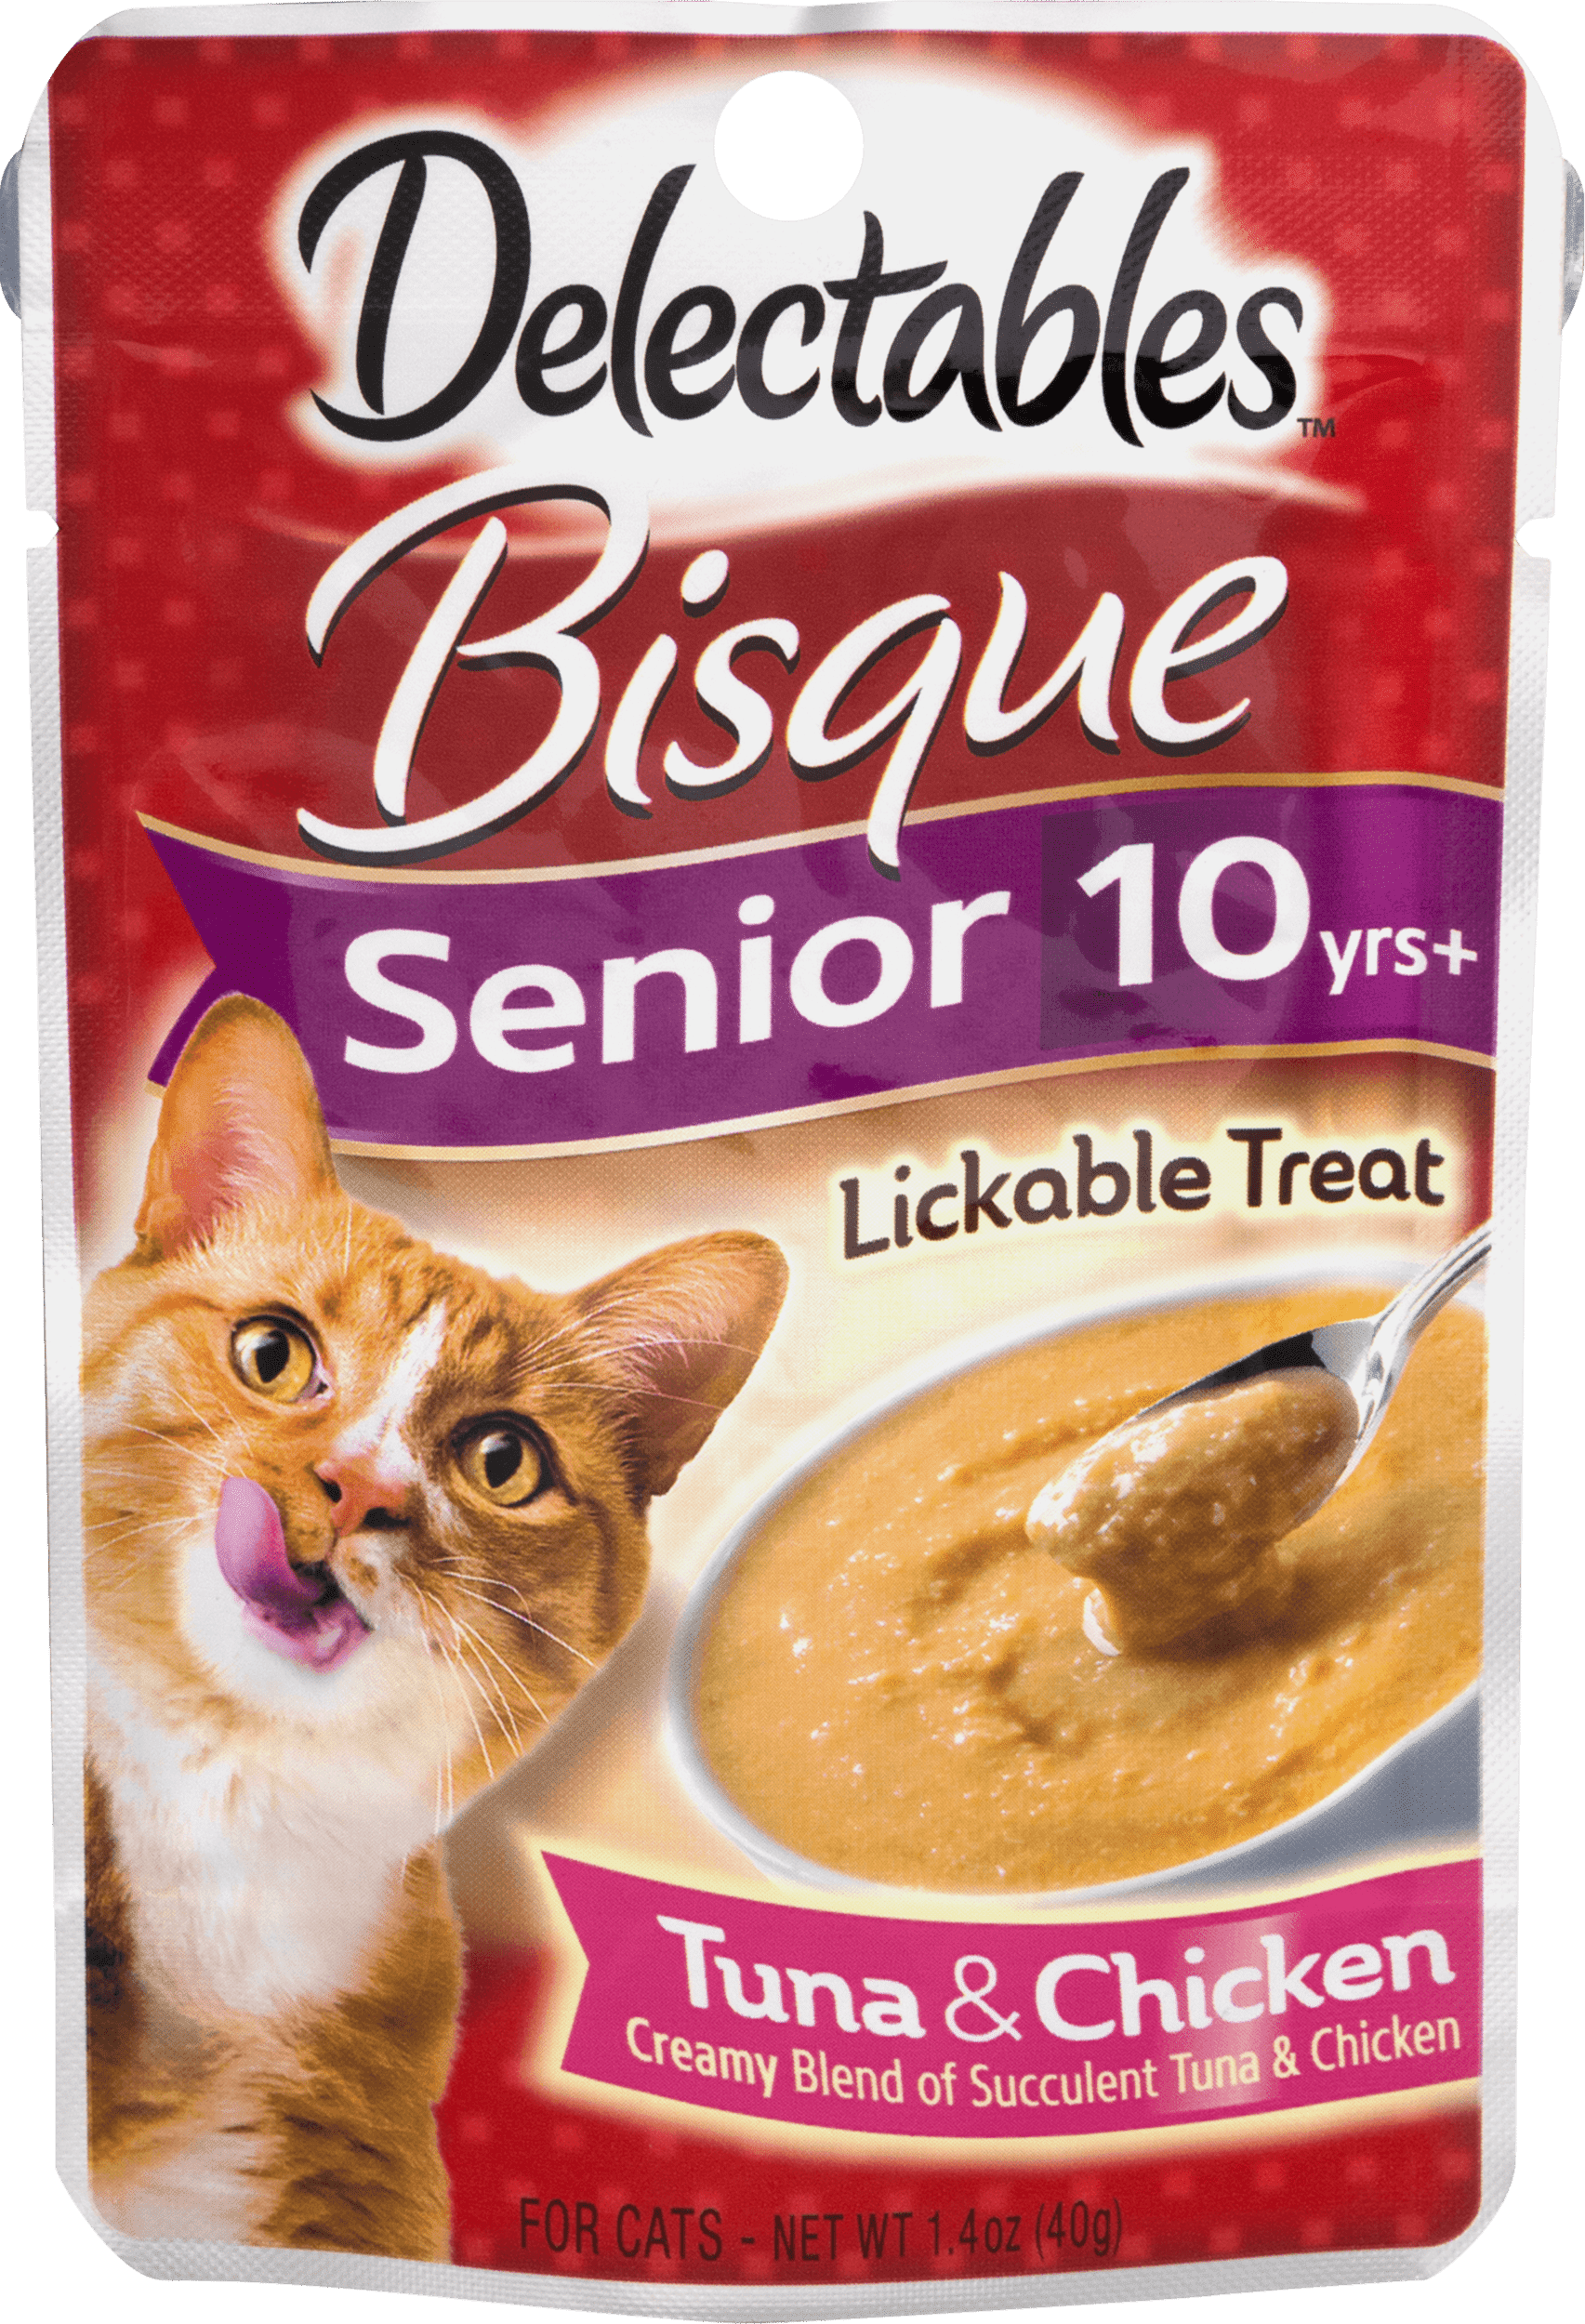 Delectables Lickable Cat Treats Bisque Senior 10 yrs+ Tuna & Chicken